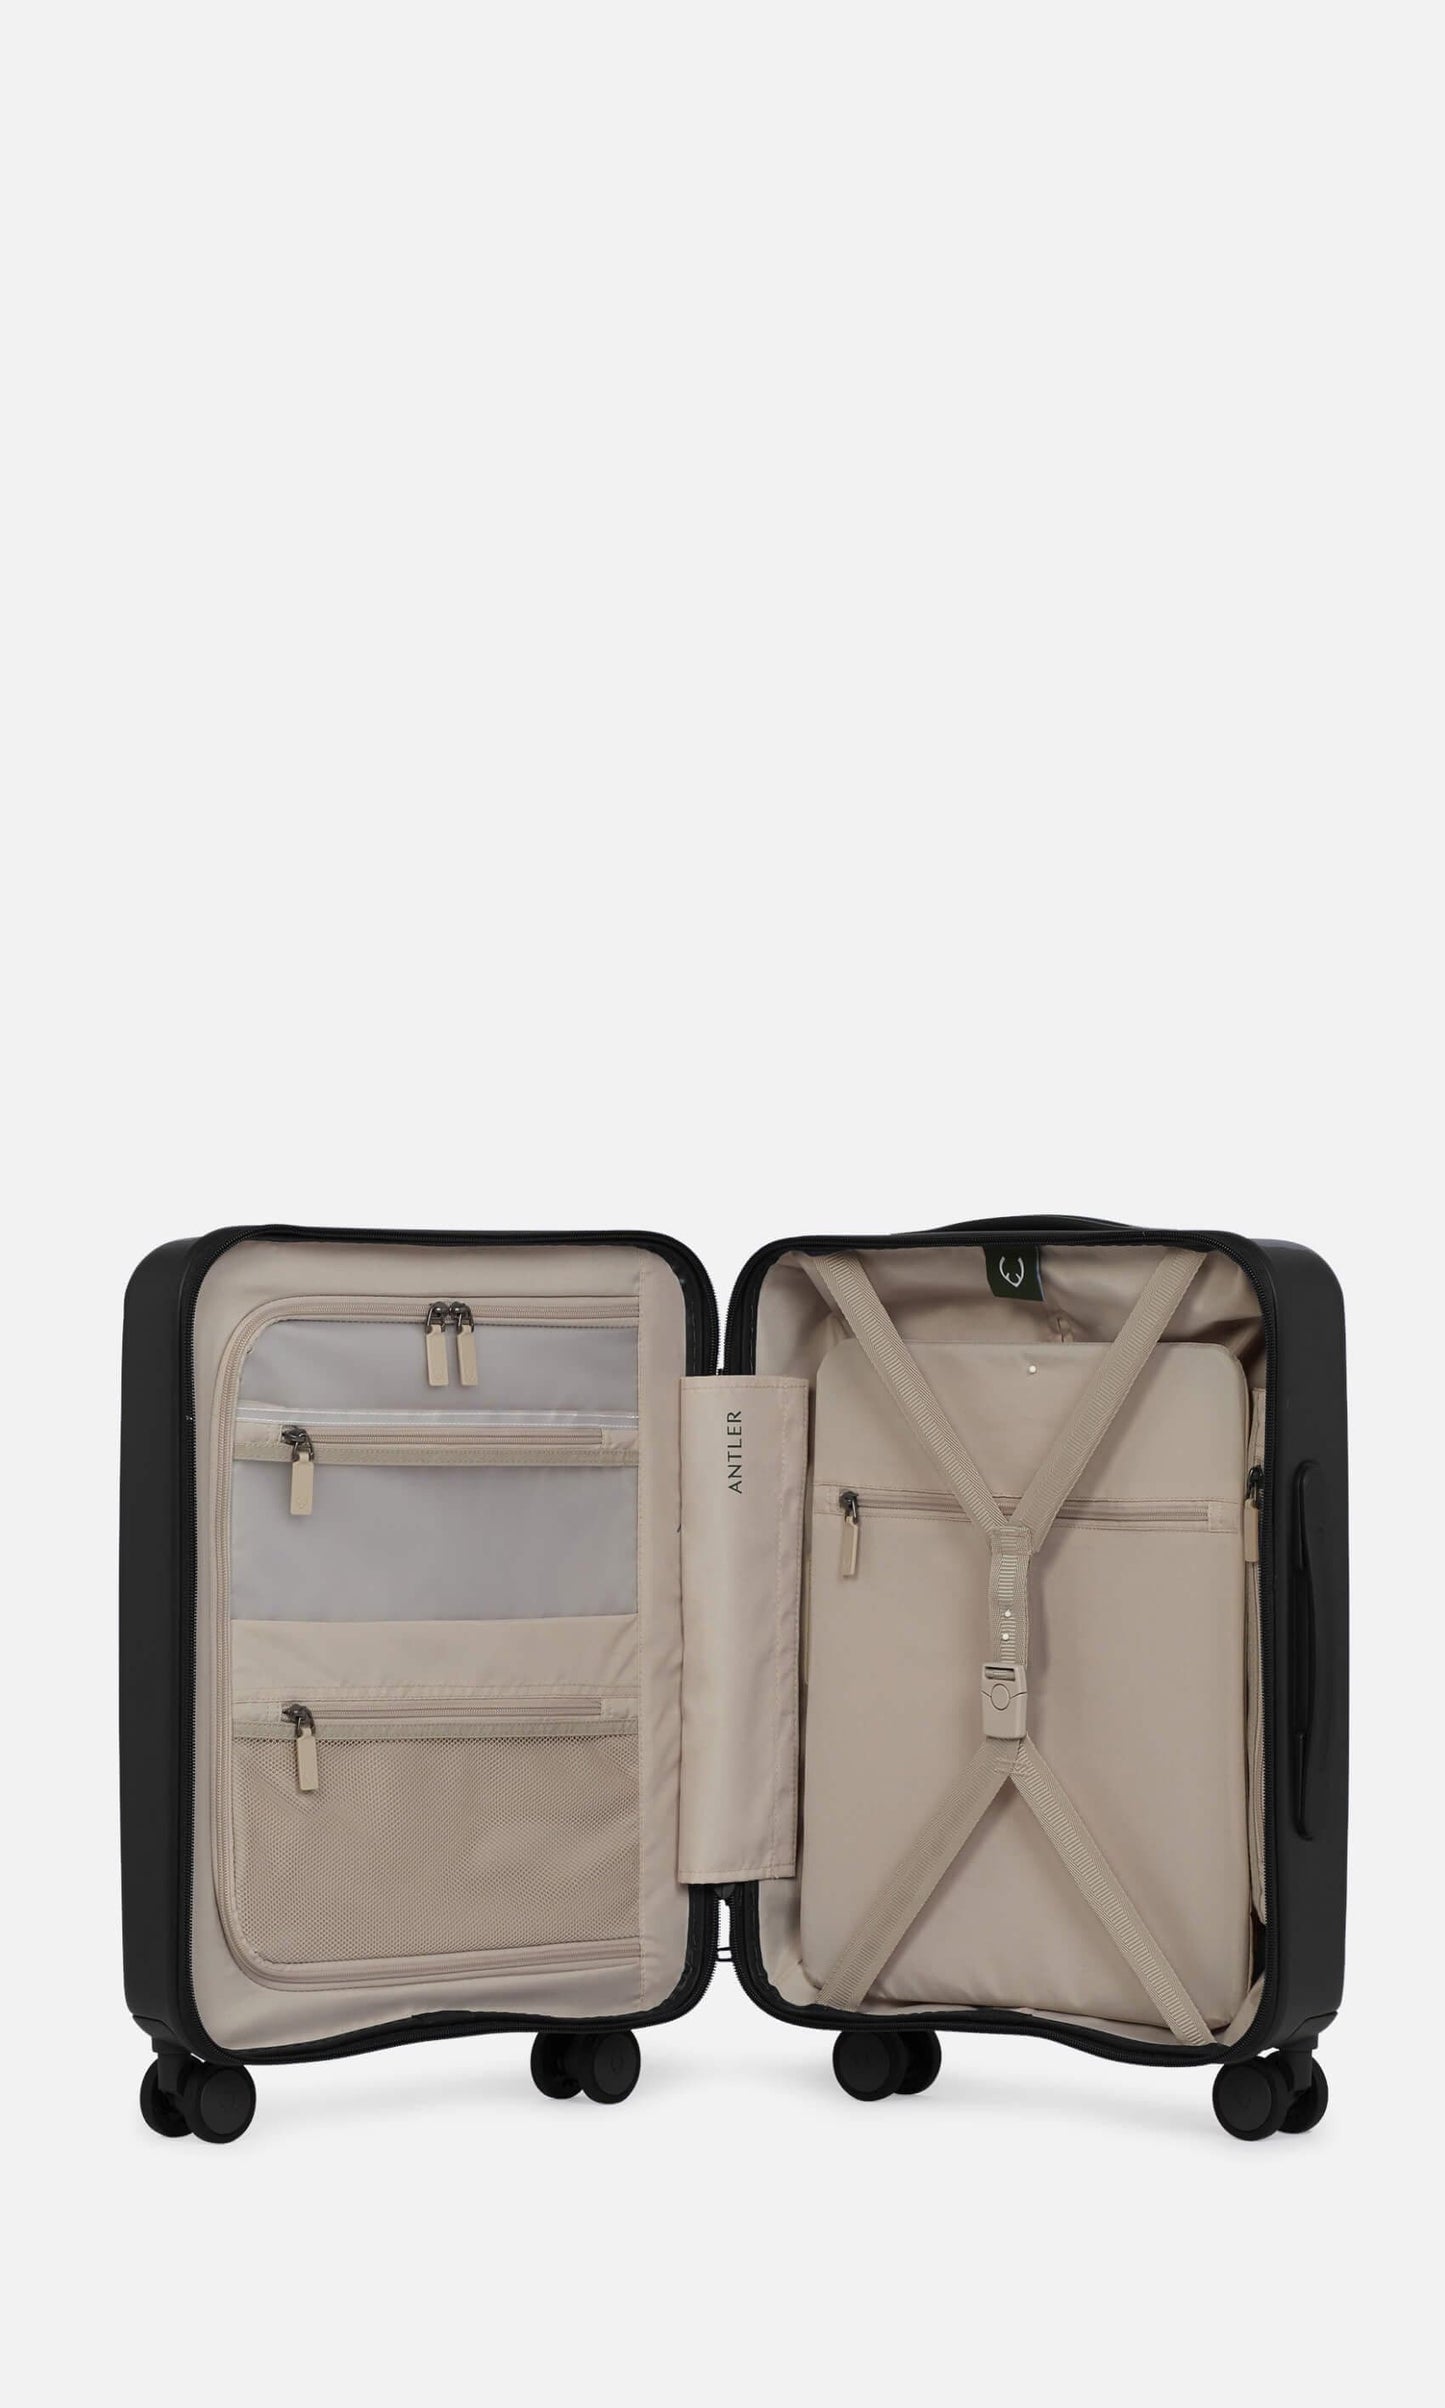 Antler Luggage -  Stamford cabin in midnight black - Hard Suitcases Stamford Cabin Suitcase Black | Hard Luggage | Antler UK